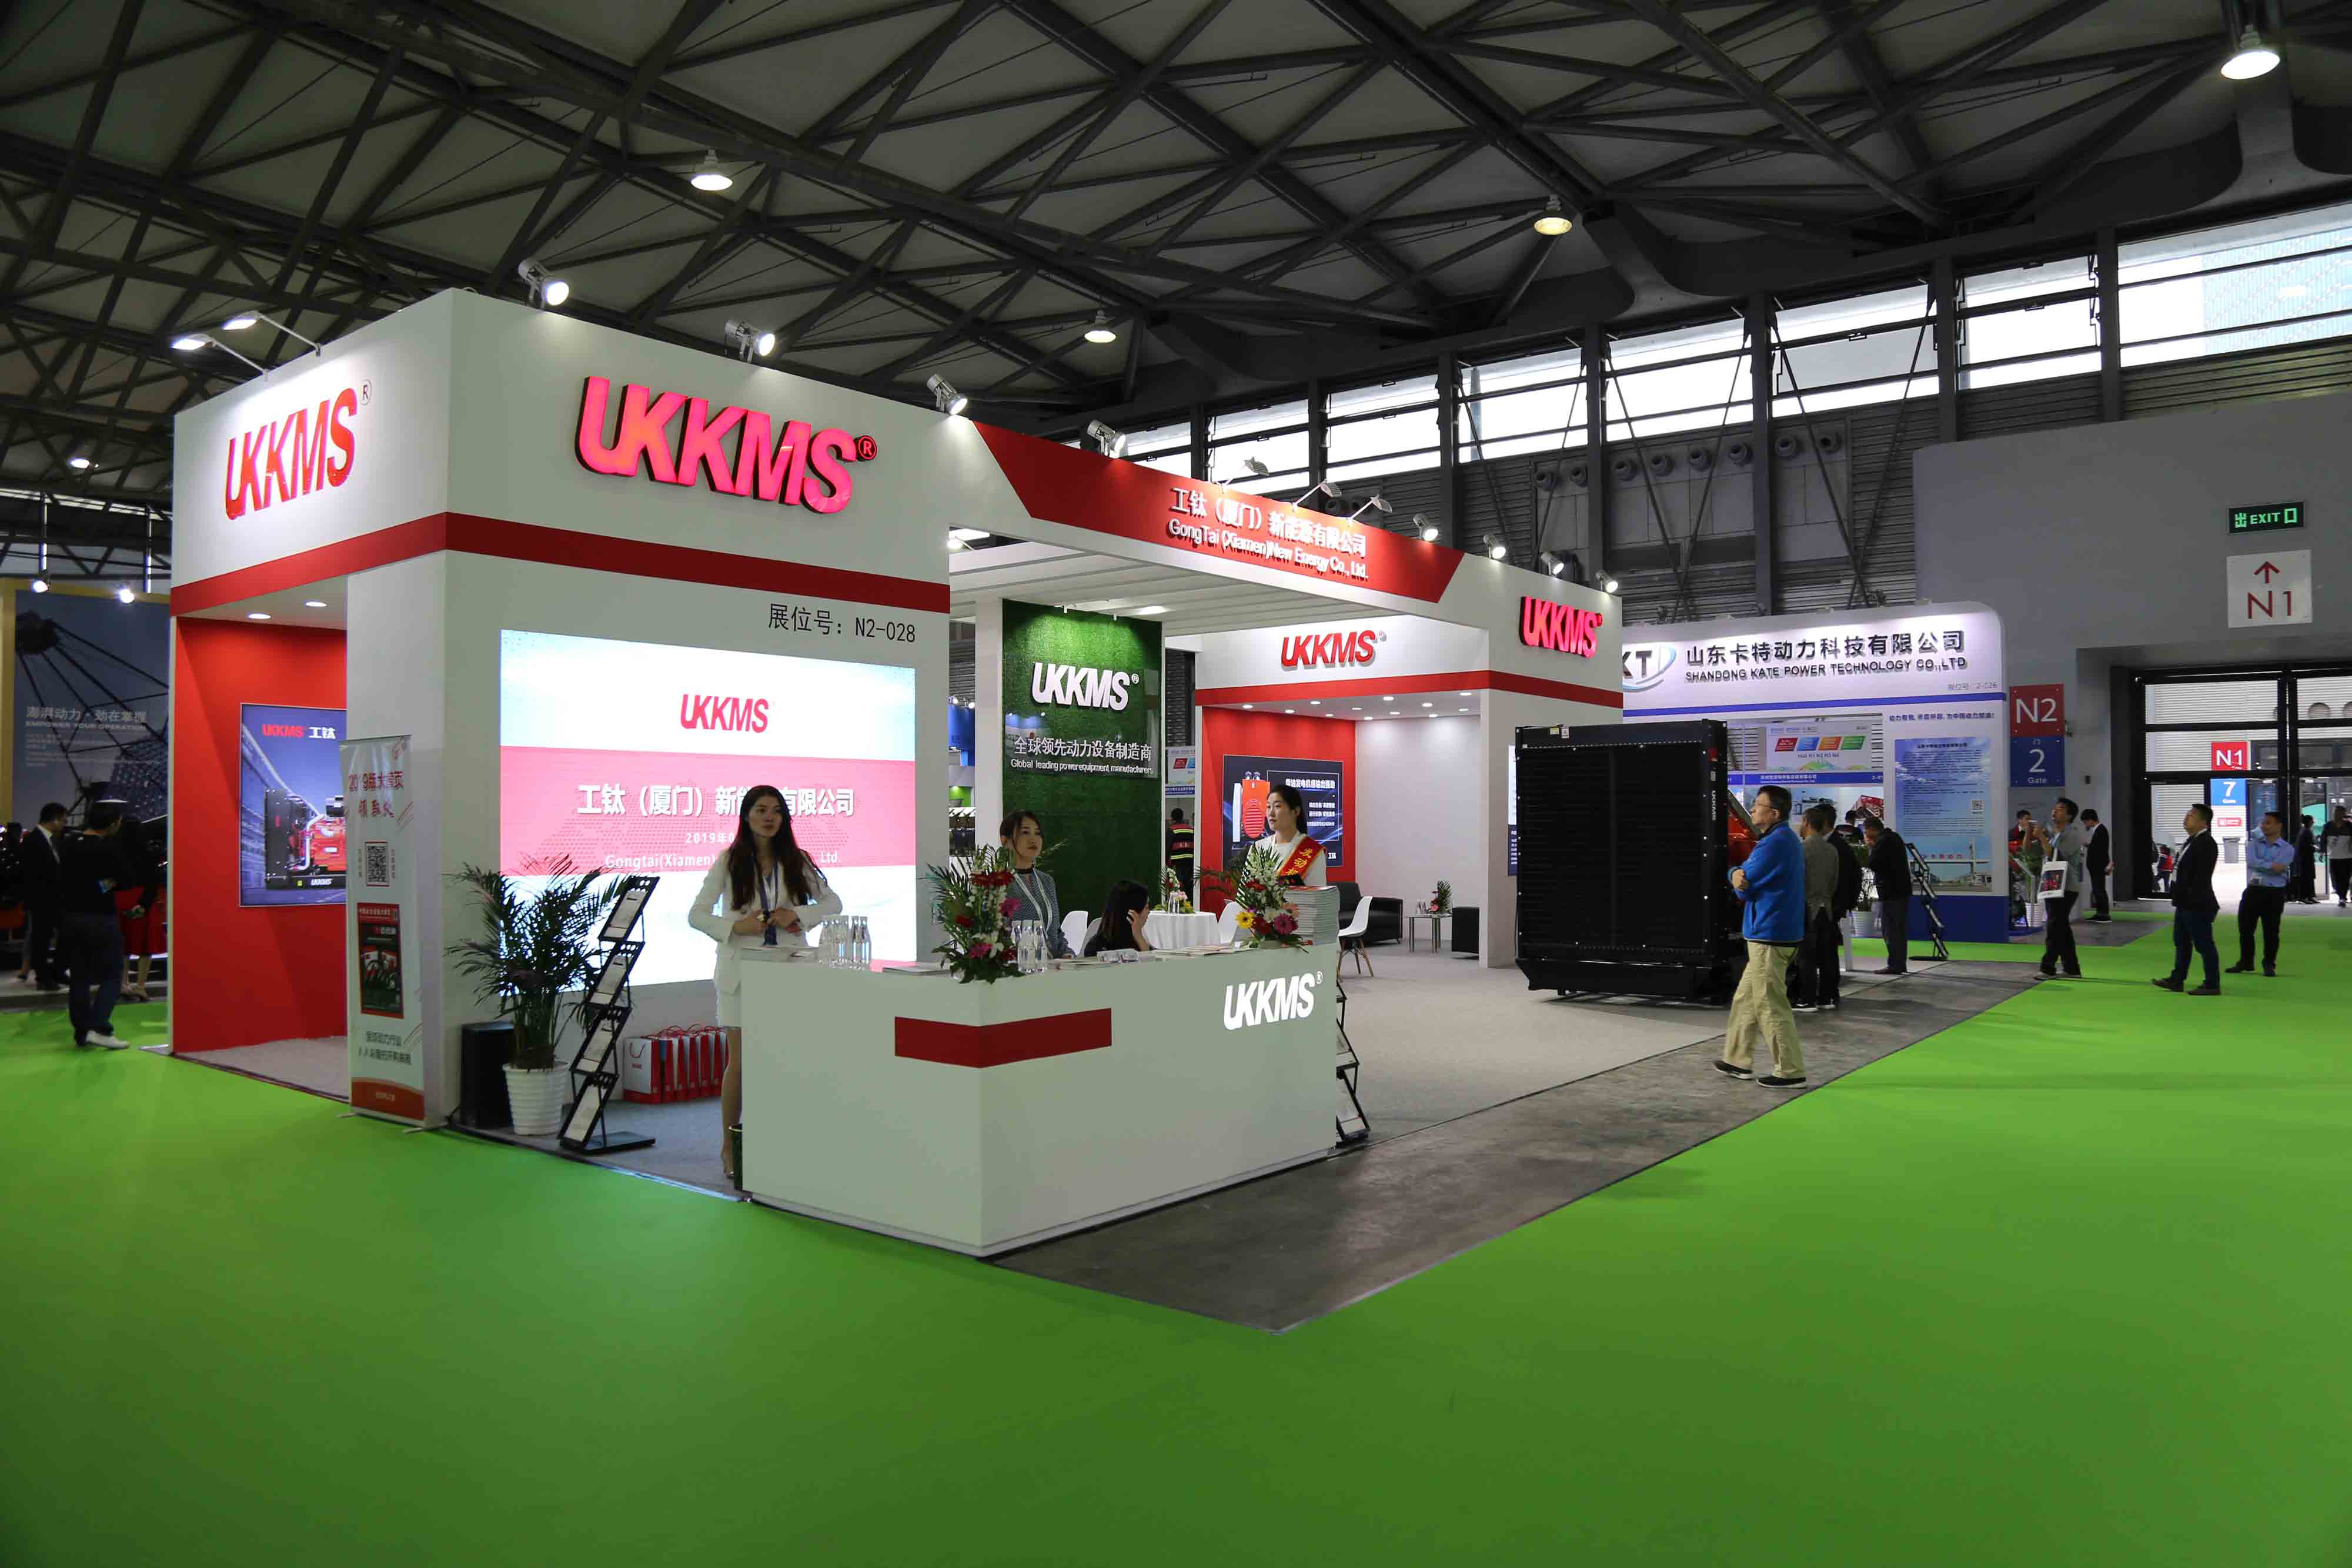 xiamen ba power trưng bày máy phát điện diesel ukkms 800kw tại triển lãm shanghai g-power 2019